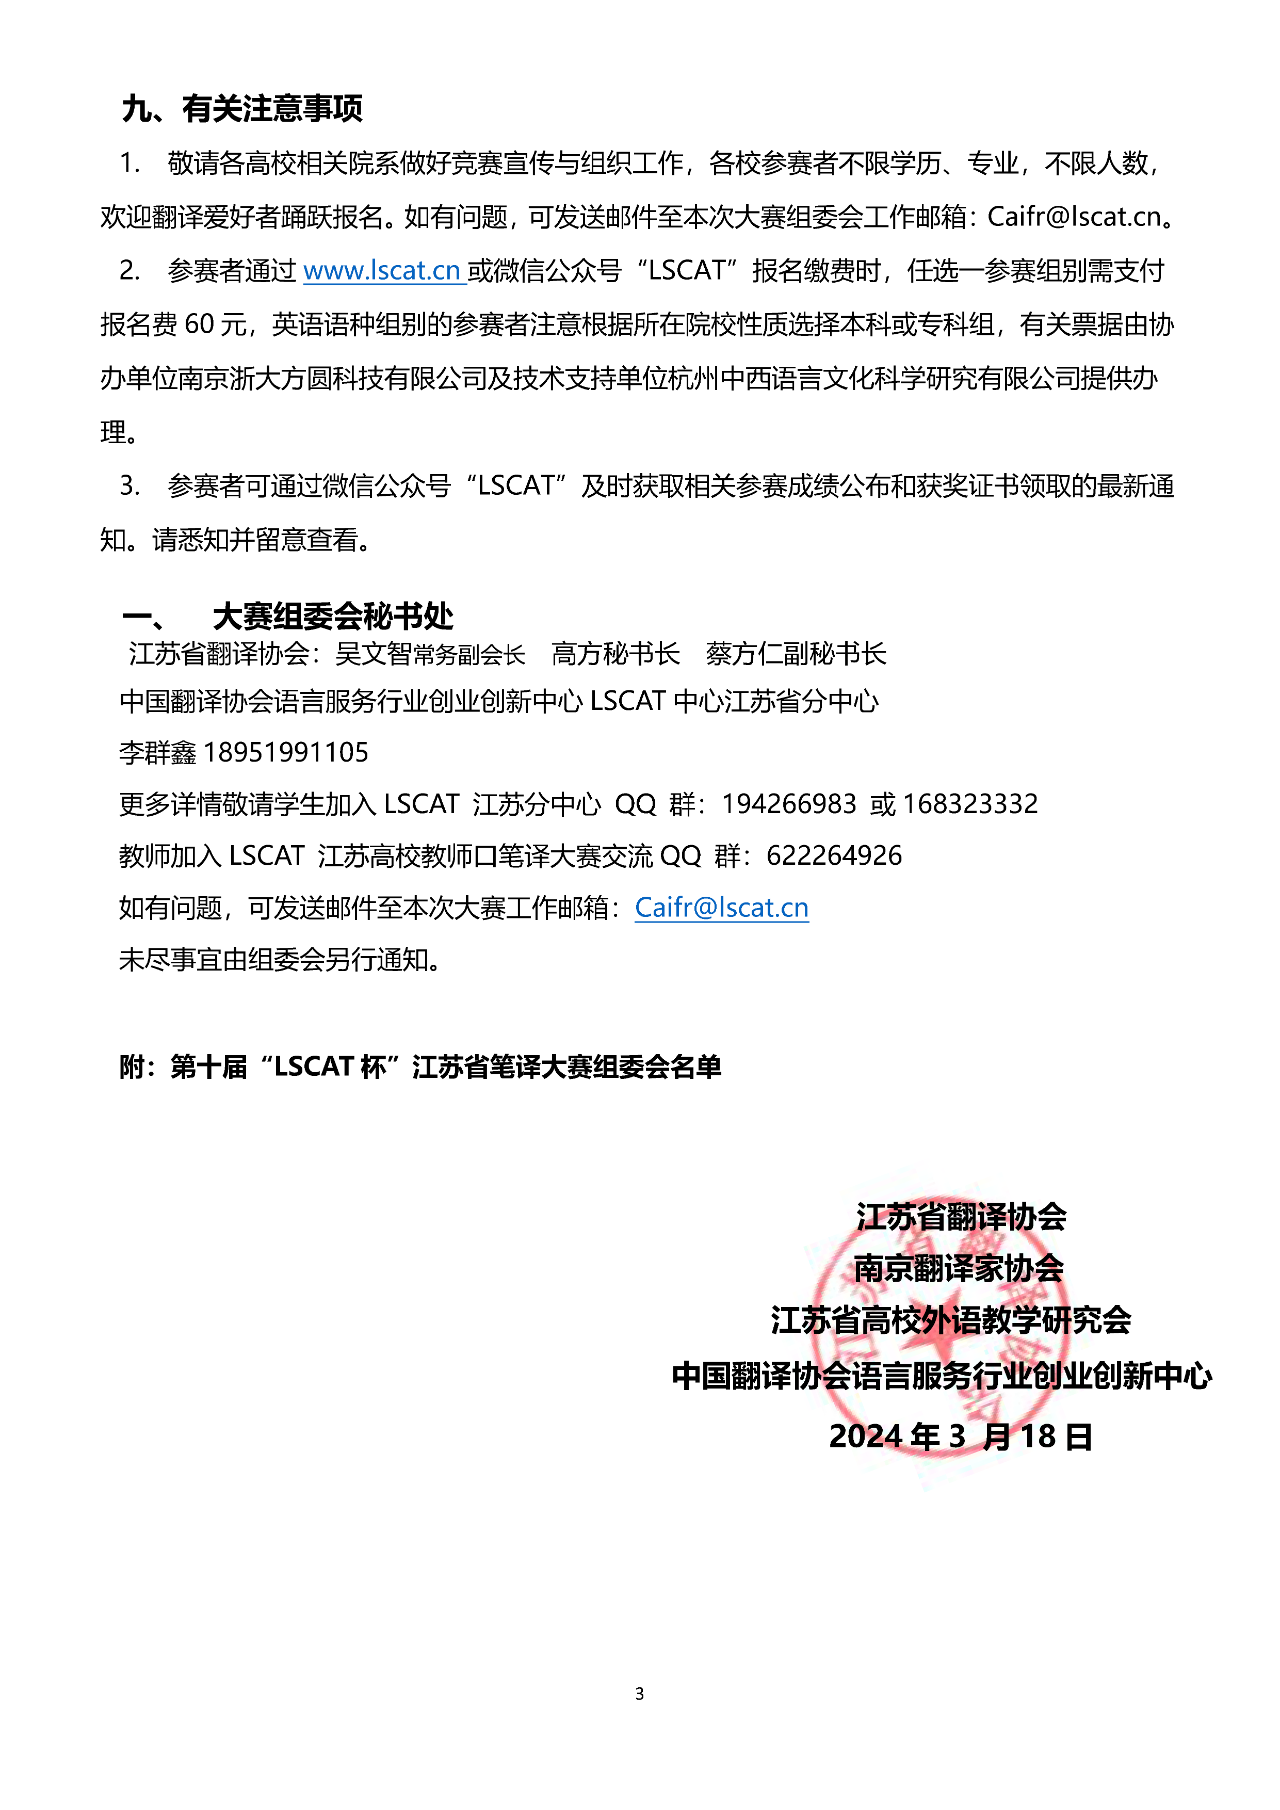 第十届“LSCAT杯”江苏省笔译大赛(图3)